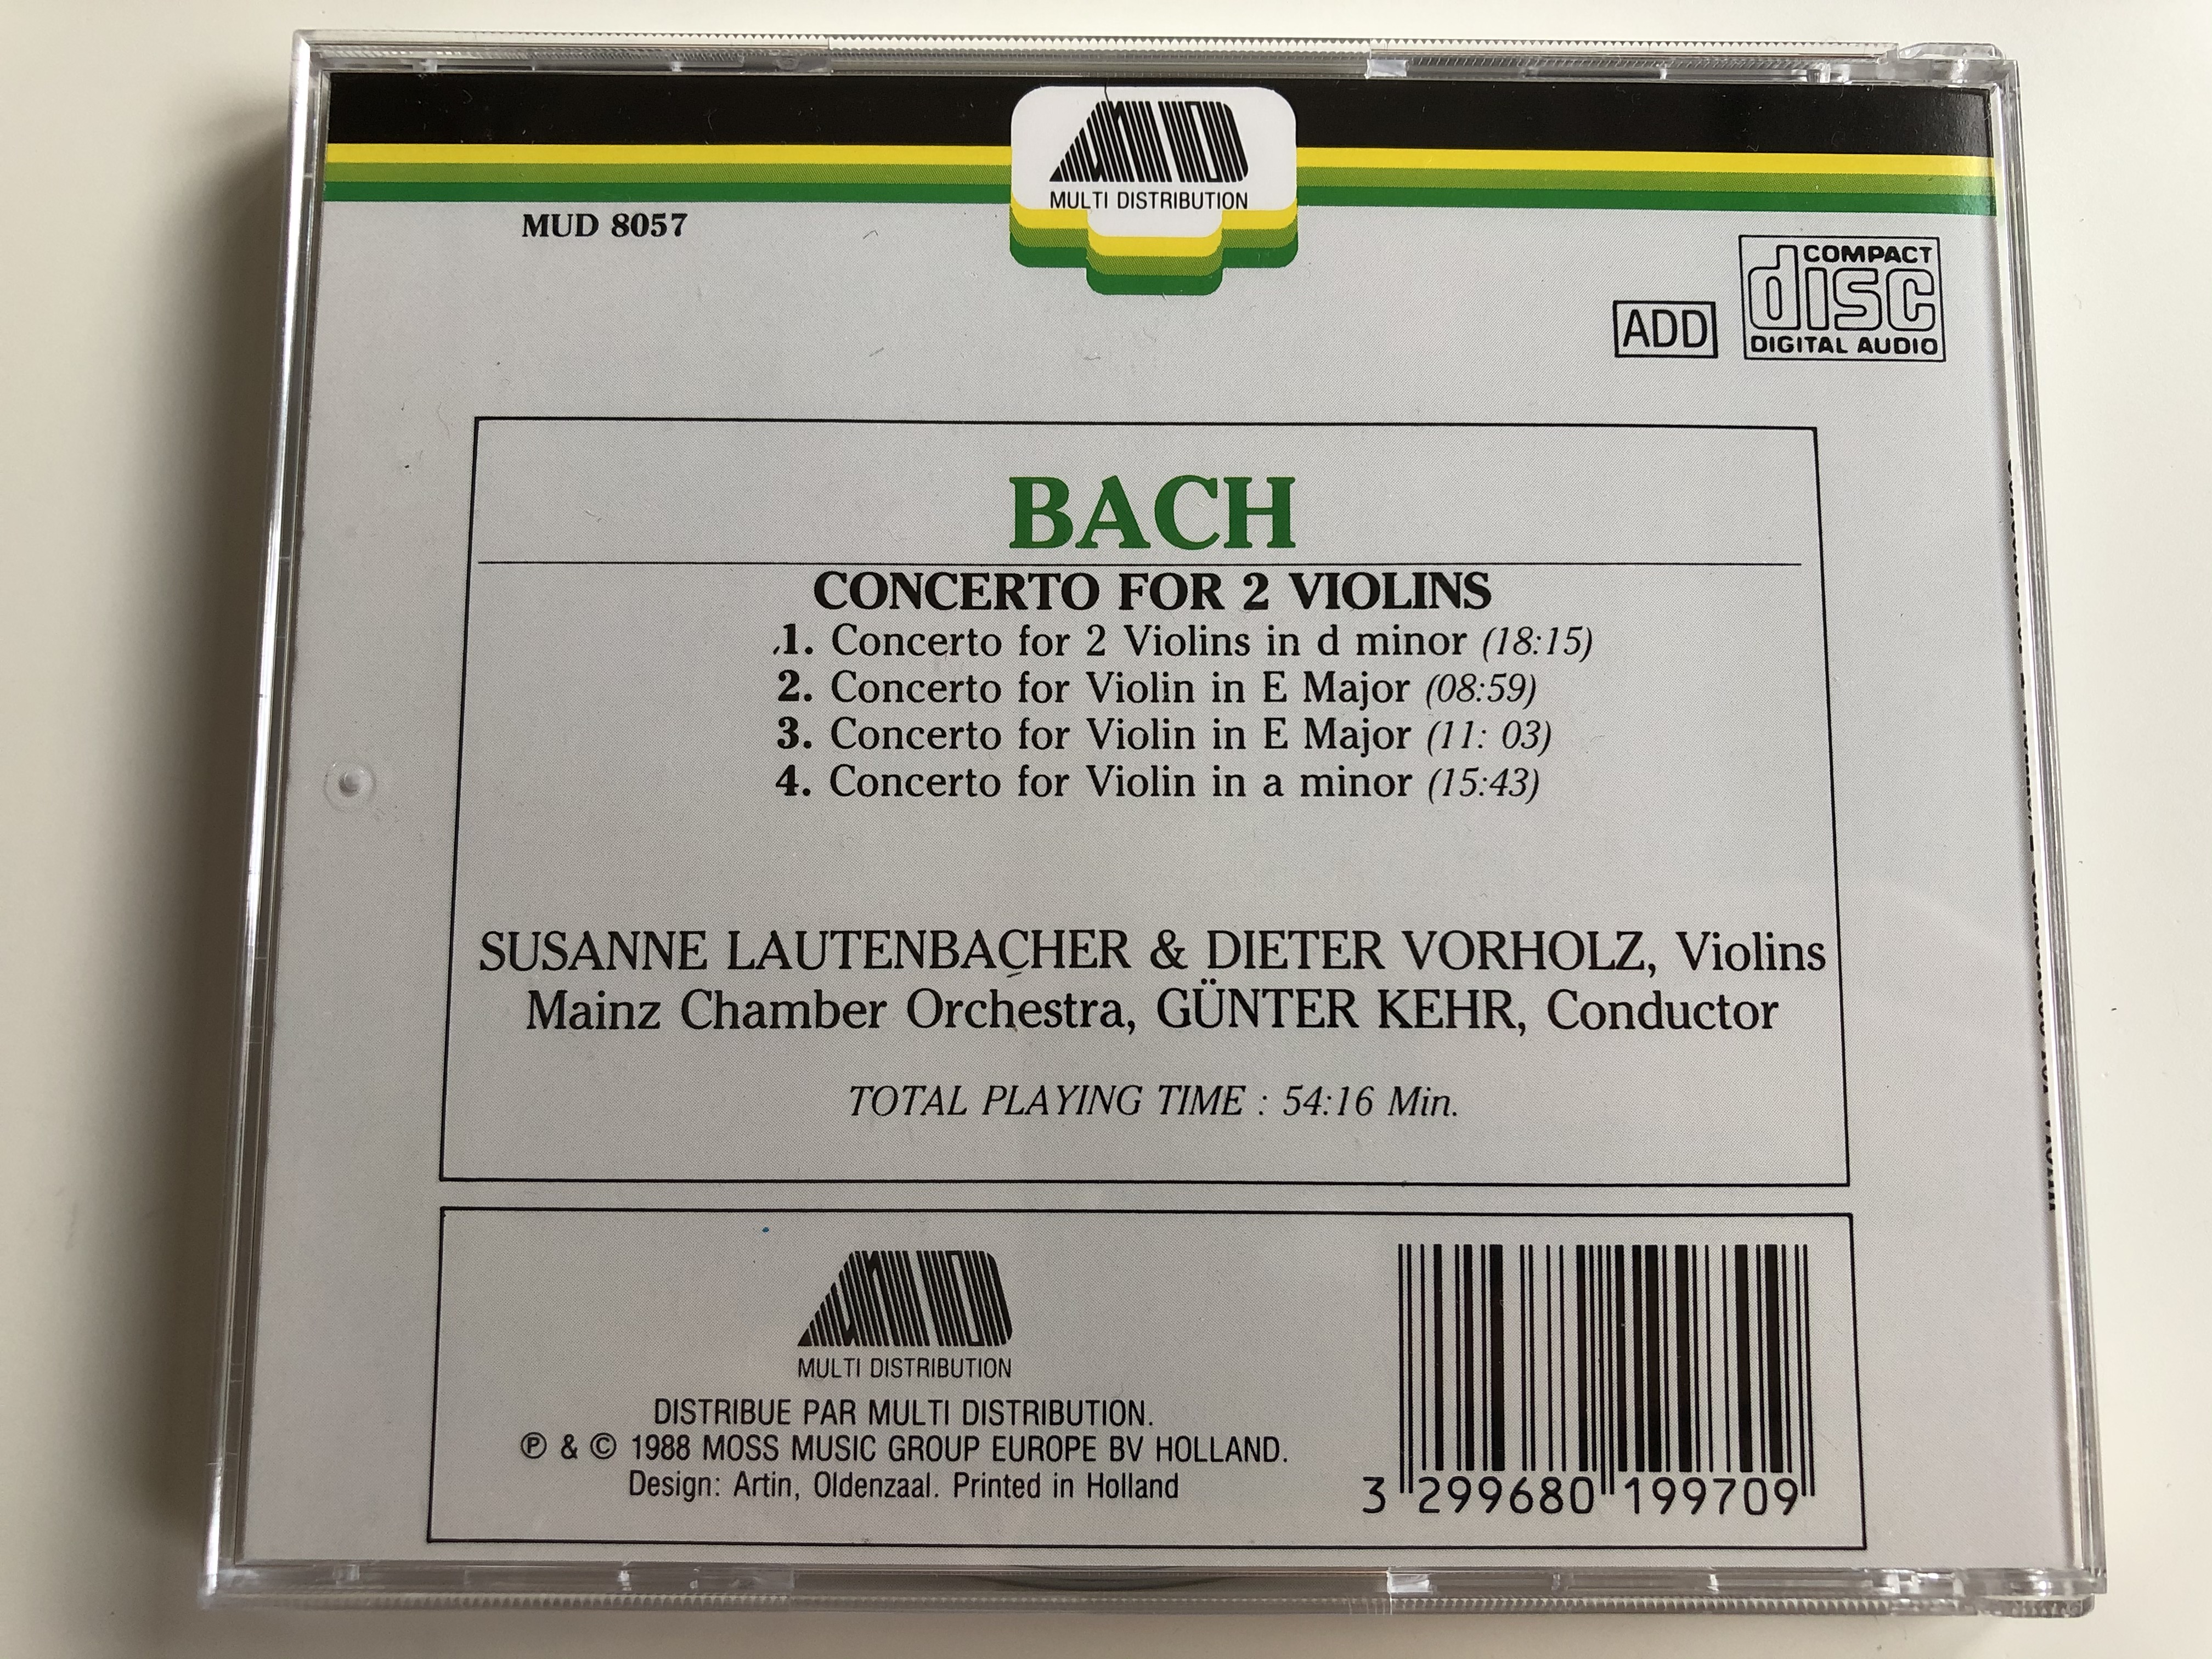 bach-concerto-for-2-violins-in-d-minor-2-concertos-for-violin-in-a-minor-in-e-major-violins-susanne-lautenbacher-dieter-volholz-conductor-gunter-kehr-mainz-chamber-ochestra-multi-distrib-5-.jpg